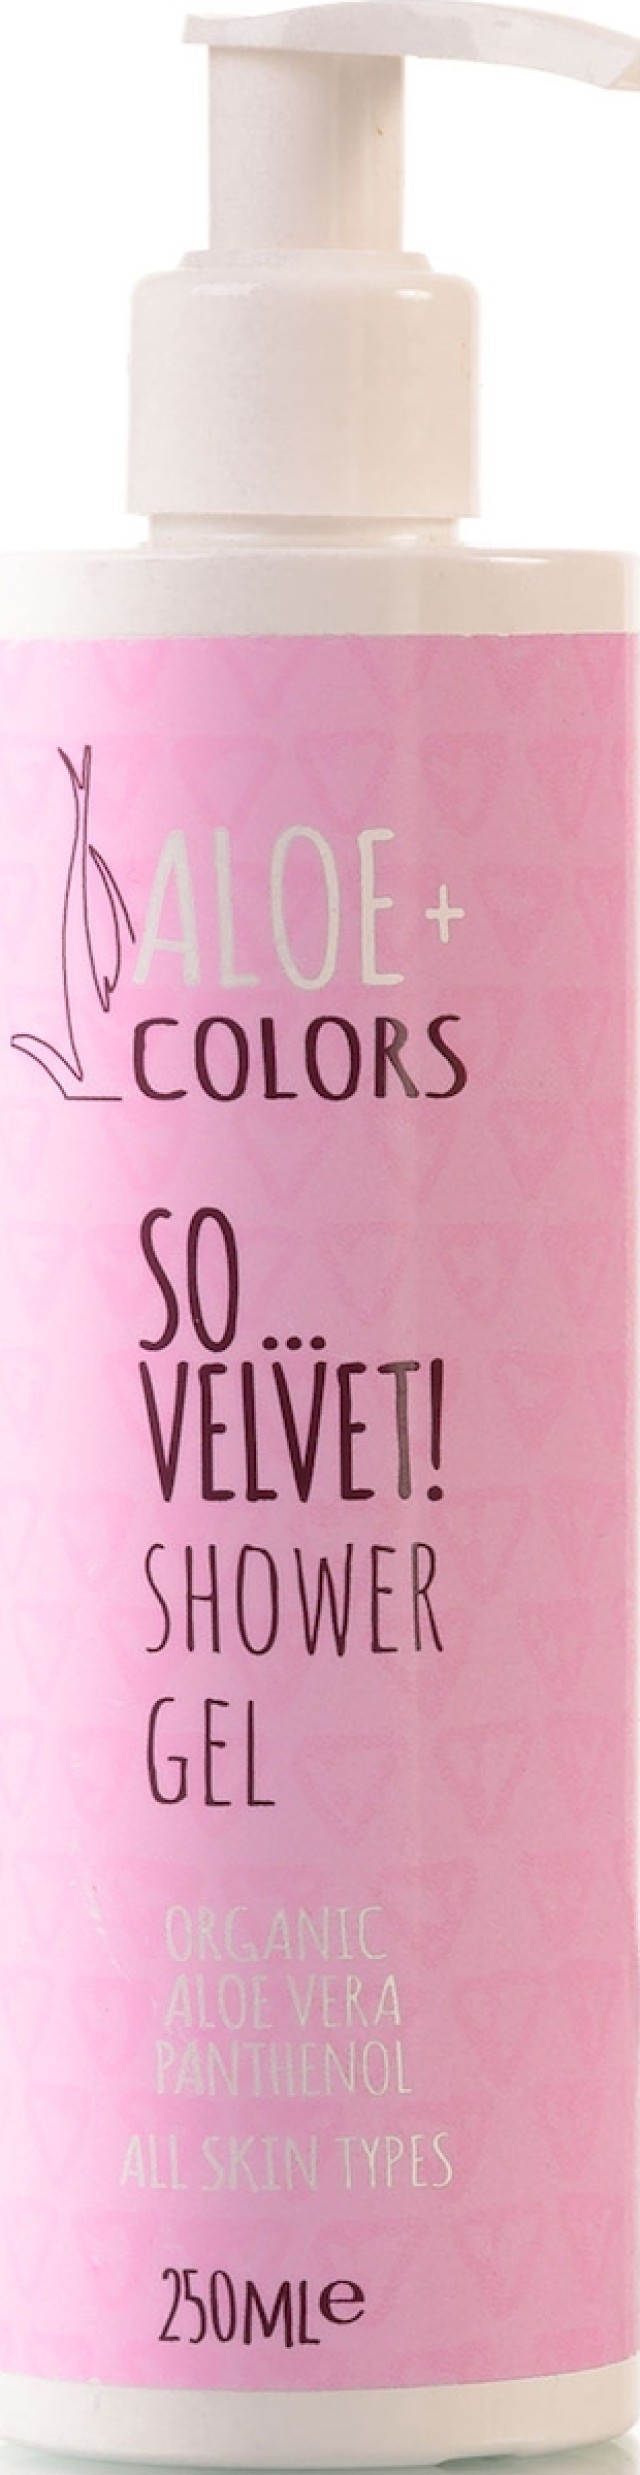 ALOE+ COLORS So... Velvet! Shower Gel, Απαλό Αφρόλουτρο με Άρωμα Πούδρας 250ml